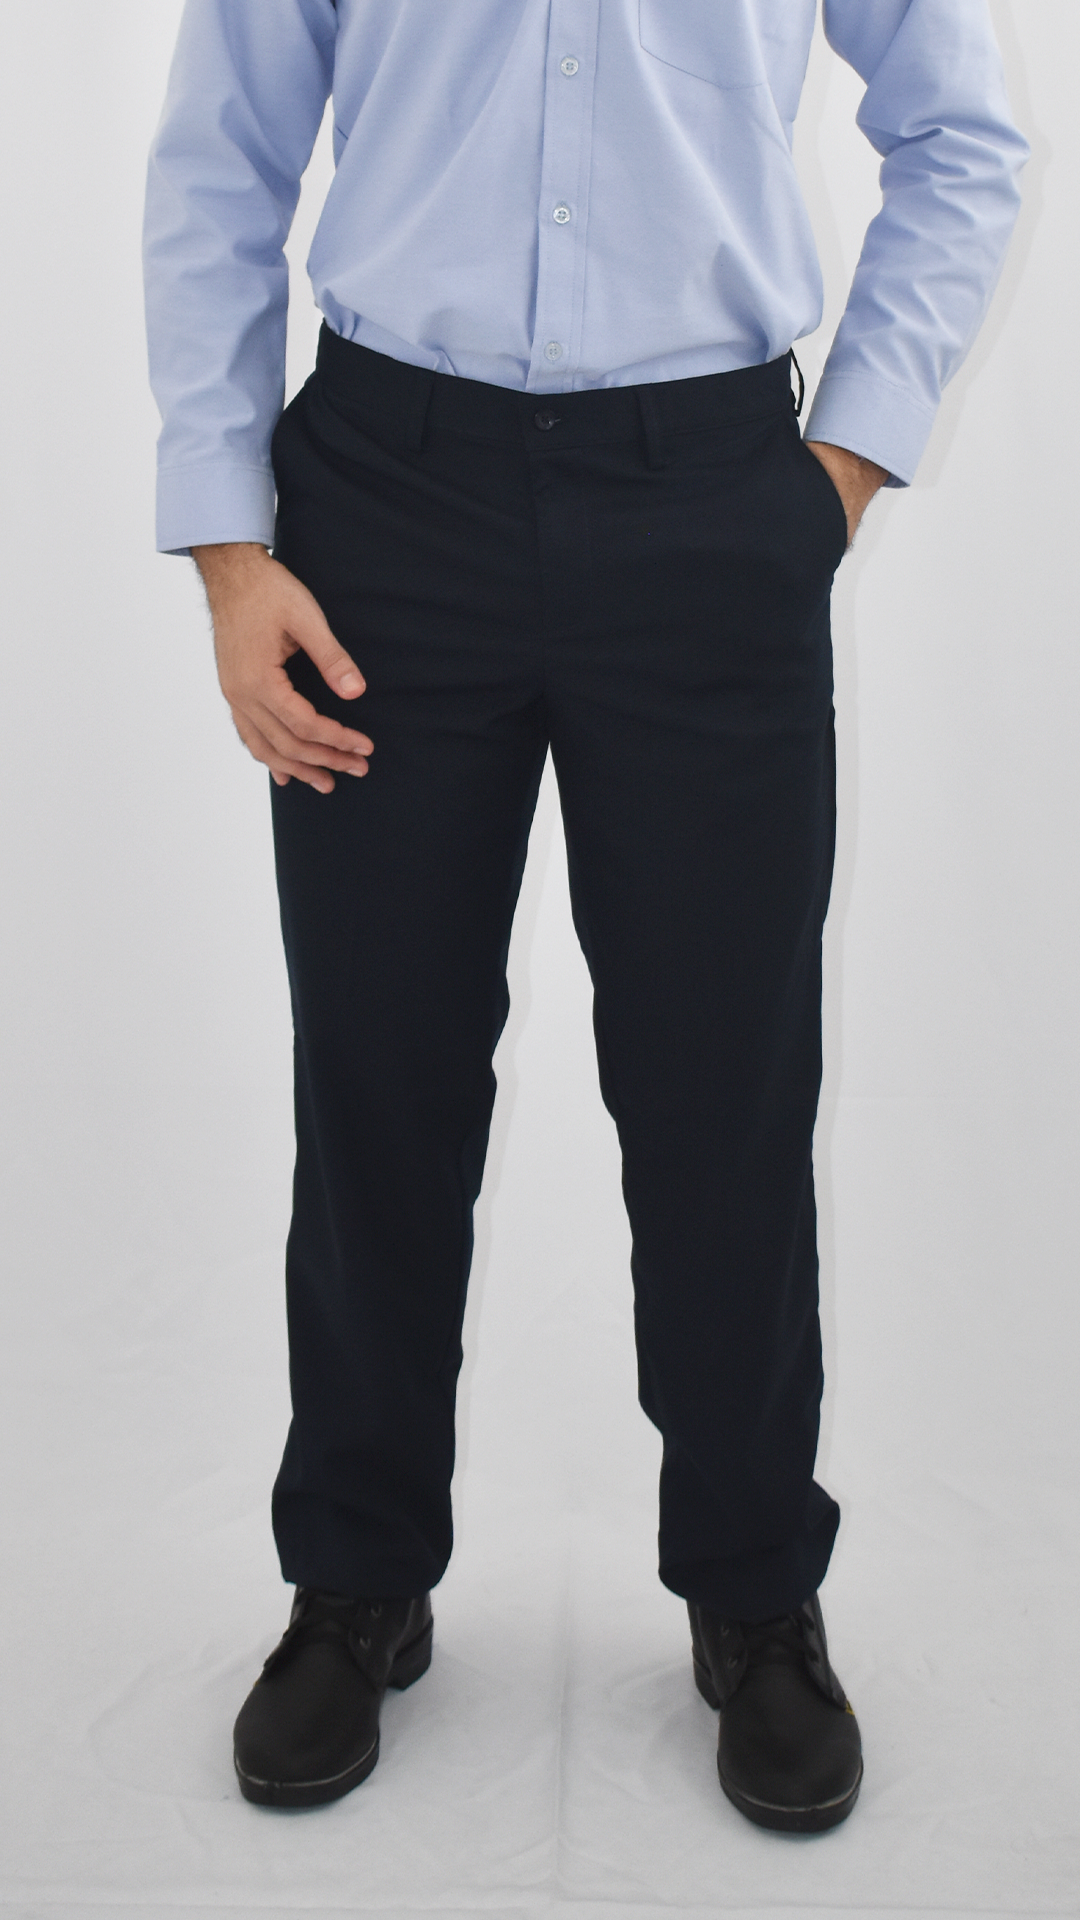 Pantalon Lino Stretch Hombre  Uniformes Ejecutivos para Hombre